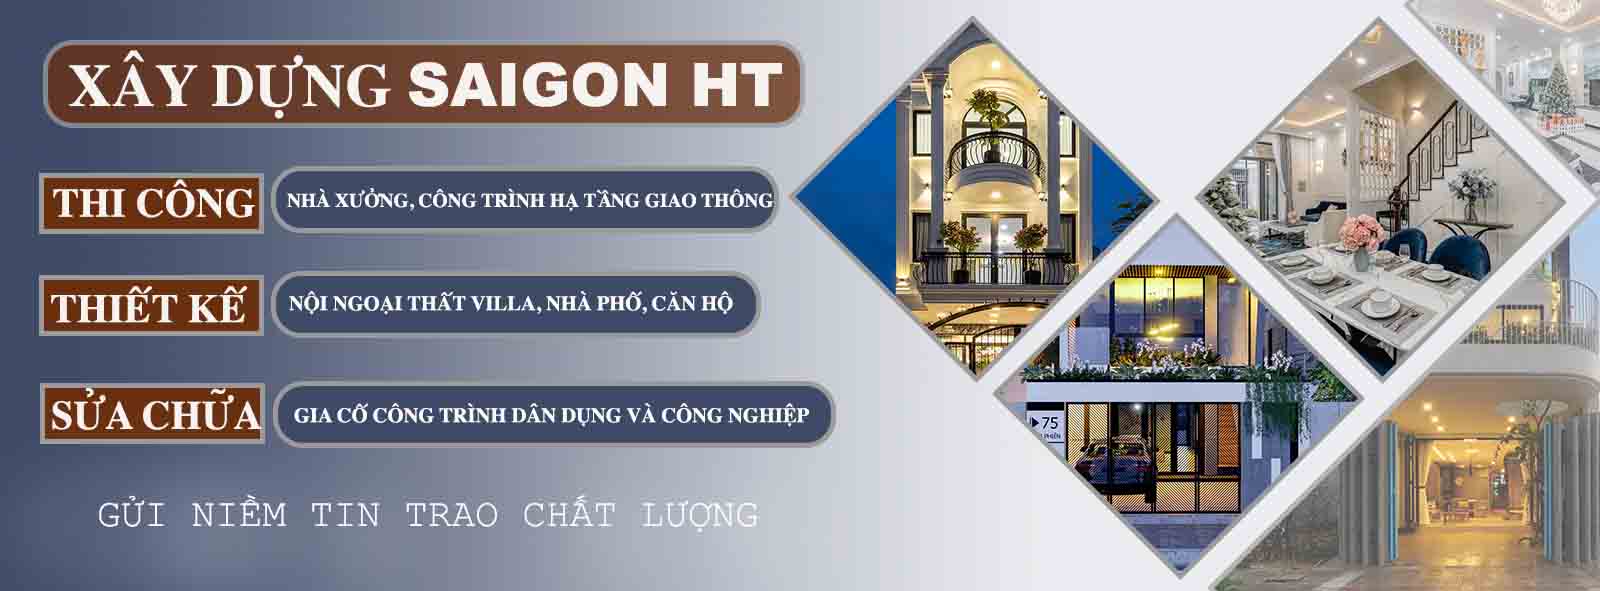 Công ty Saigon HT